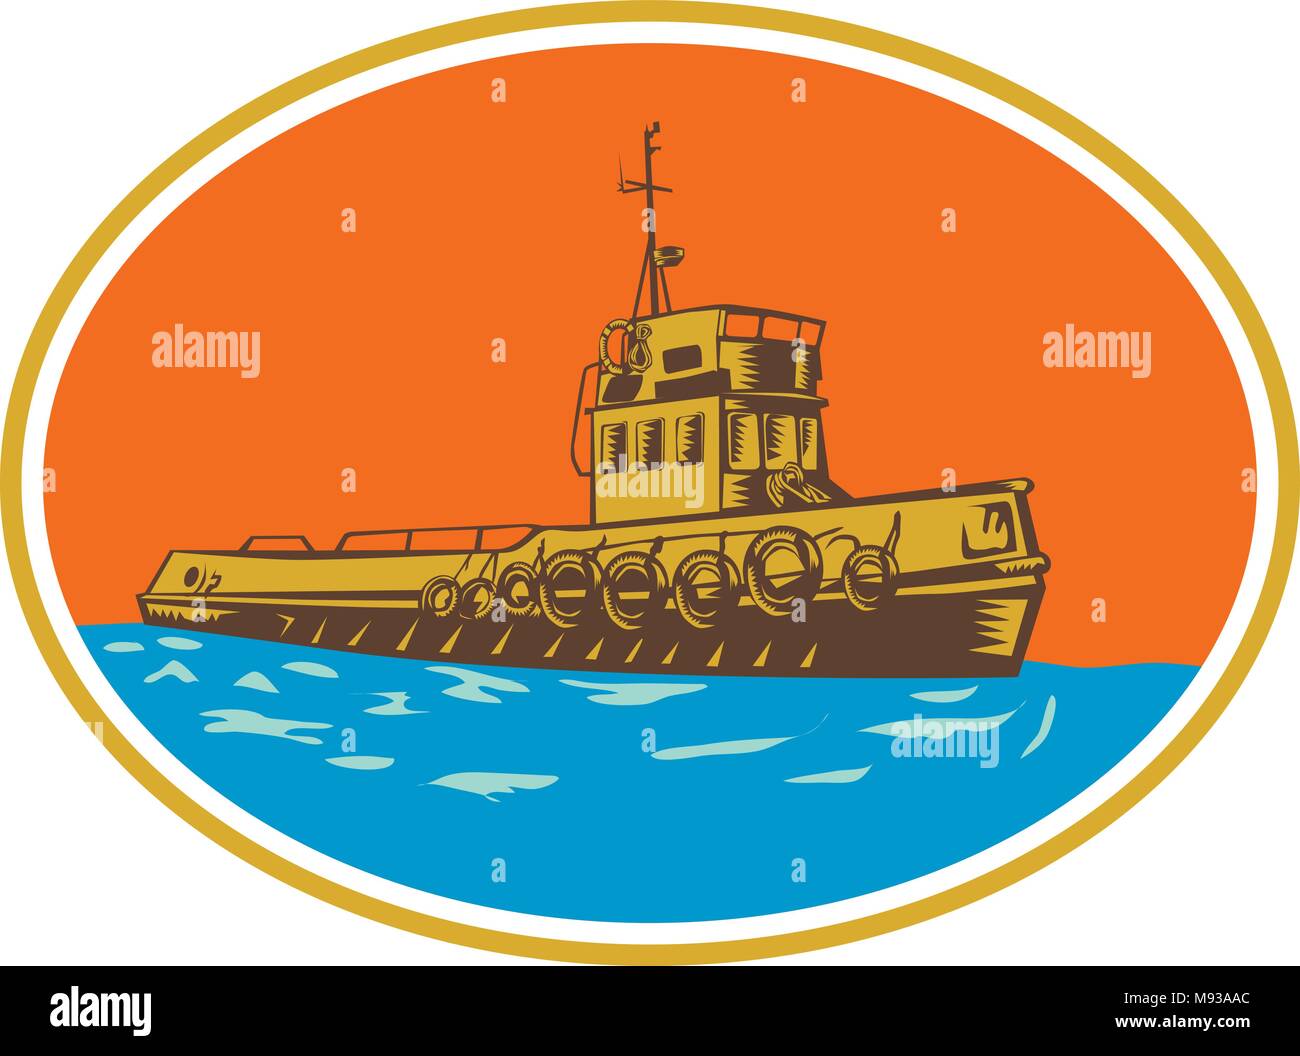 Retro Holzschnitt stil Abbildung: Schlepper, tugboat oder speyrer, eine Art marine Schiff, das Manöver andere Schiff oder Boot, indem Sie ziehen durch direkte co Stock Vektor